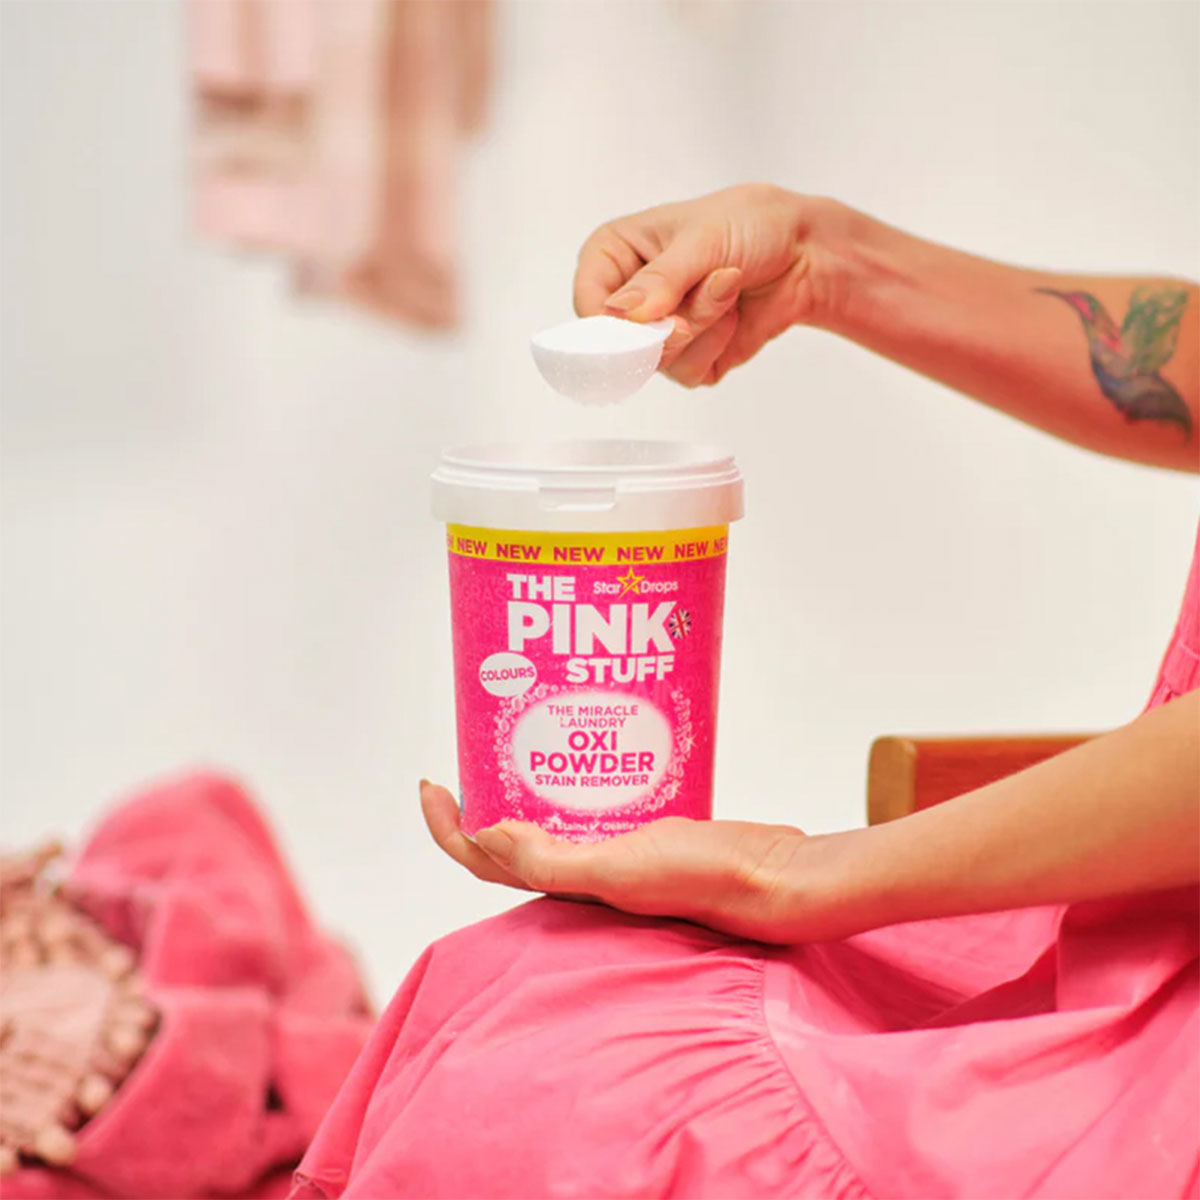 El Quitamanchas Milagroso en Polvo para Ropa Color OXI 1 kg The Pink Stuff - 🌱 🇬🇧 Producto Vegano del Reino Unido